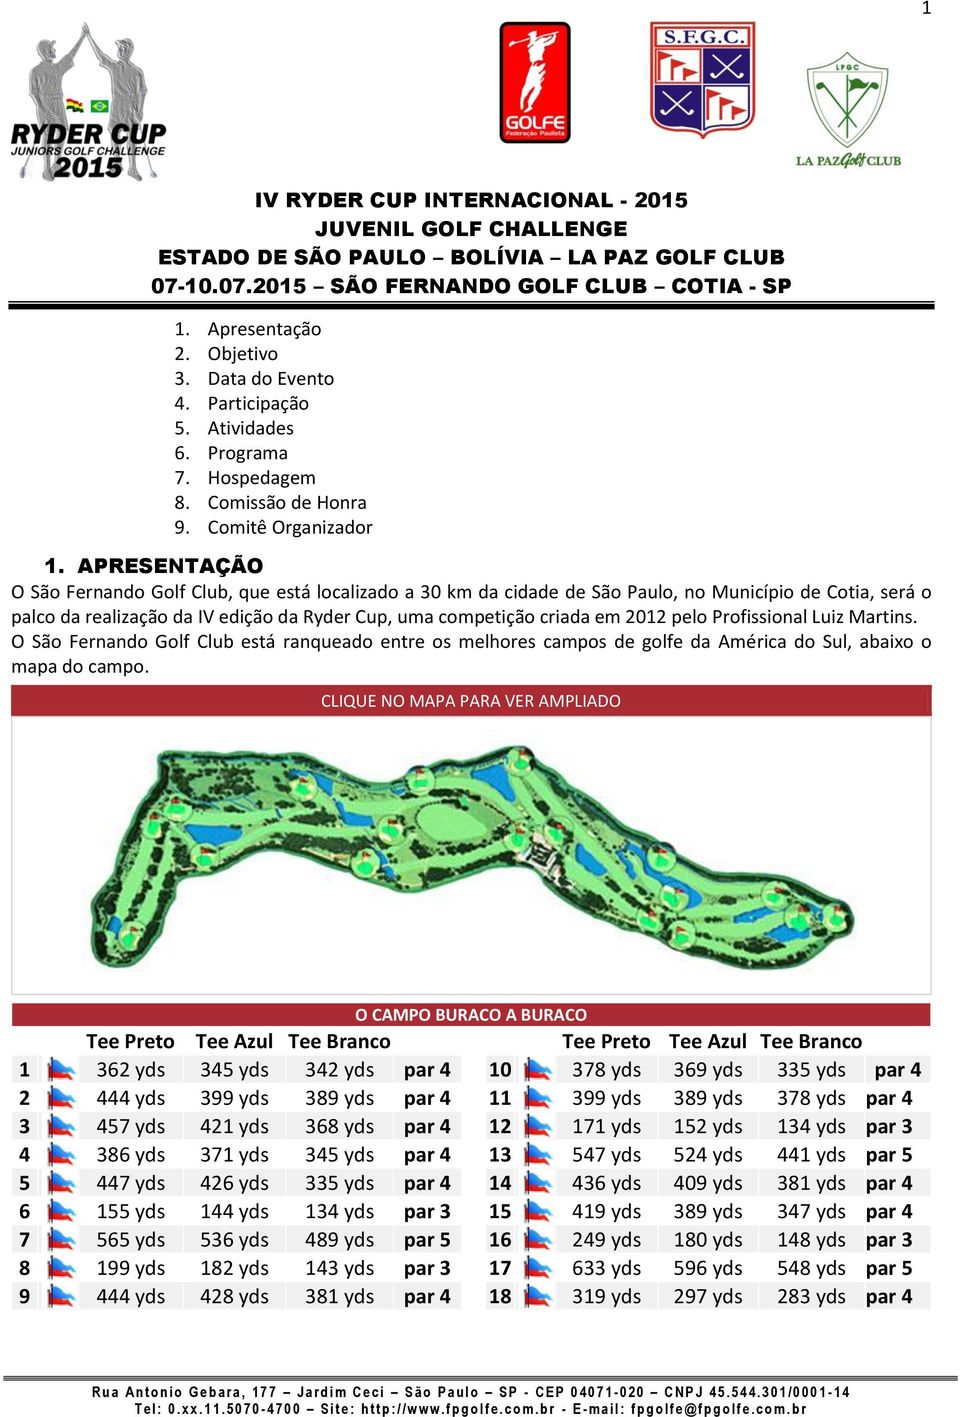 pelo Profissional Luiz Martins. O São Fernando Golf Club está ranqueado entre os melhores campos de golfe da América do Sul, abaixo o mapa do campo.